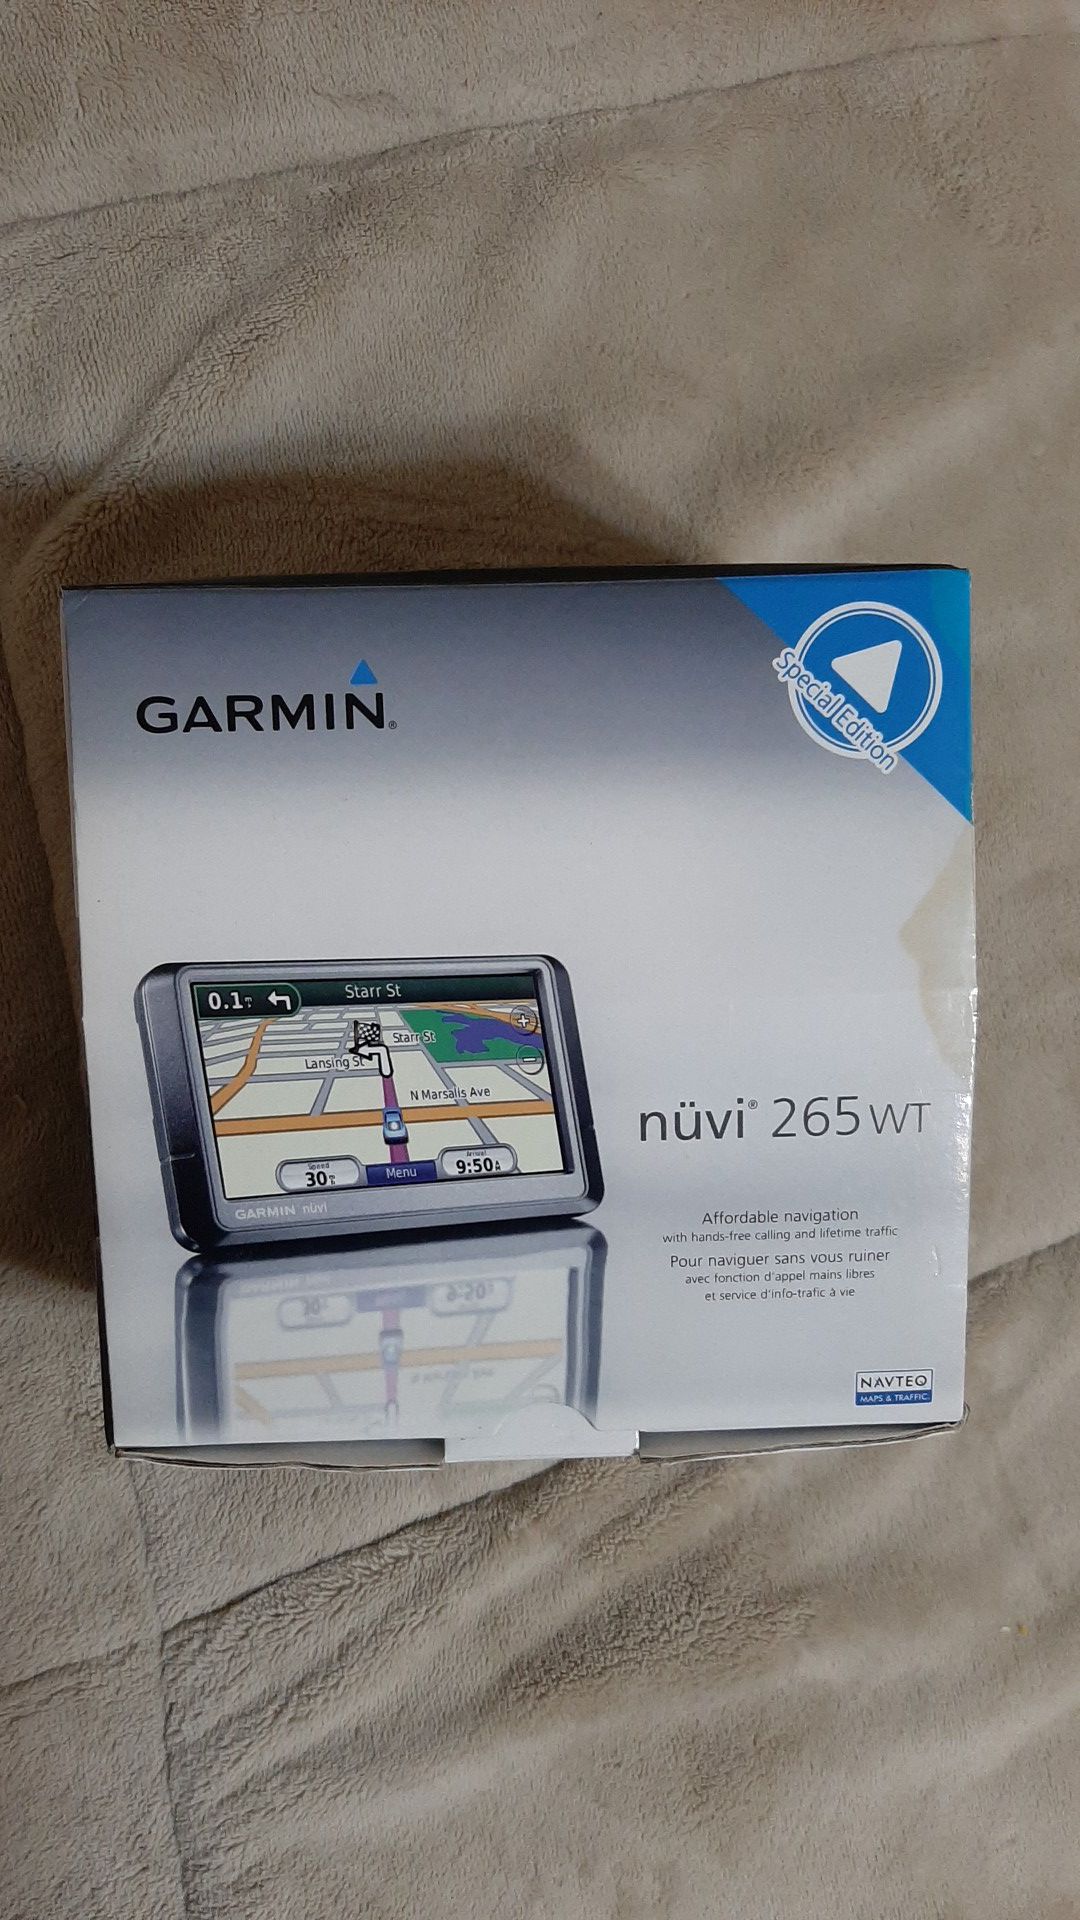 GARMIN nuvi 265 WT Special Edition